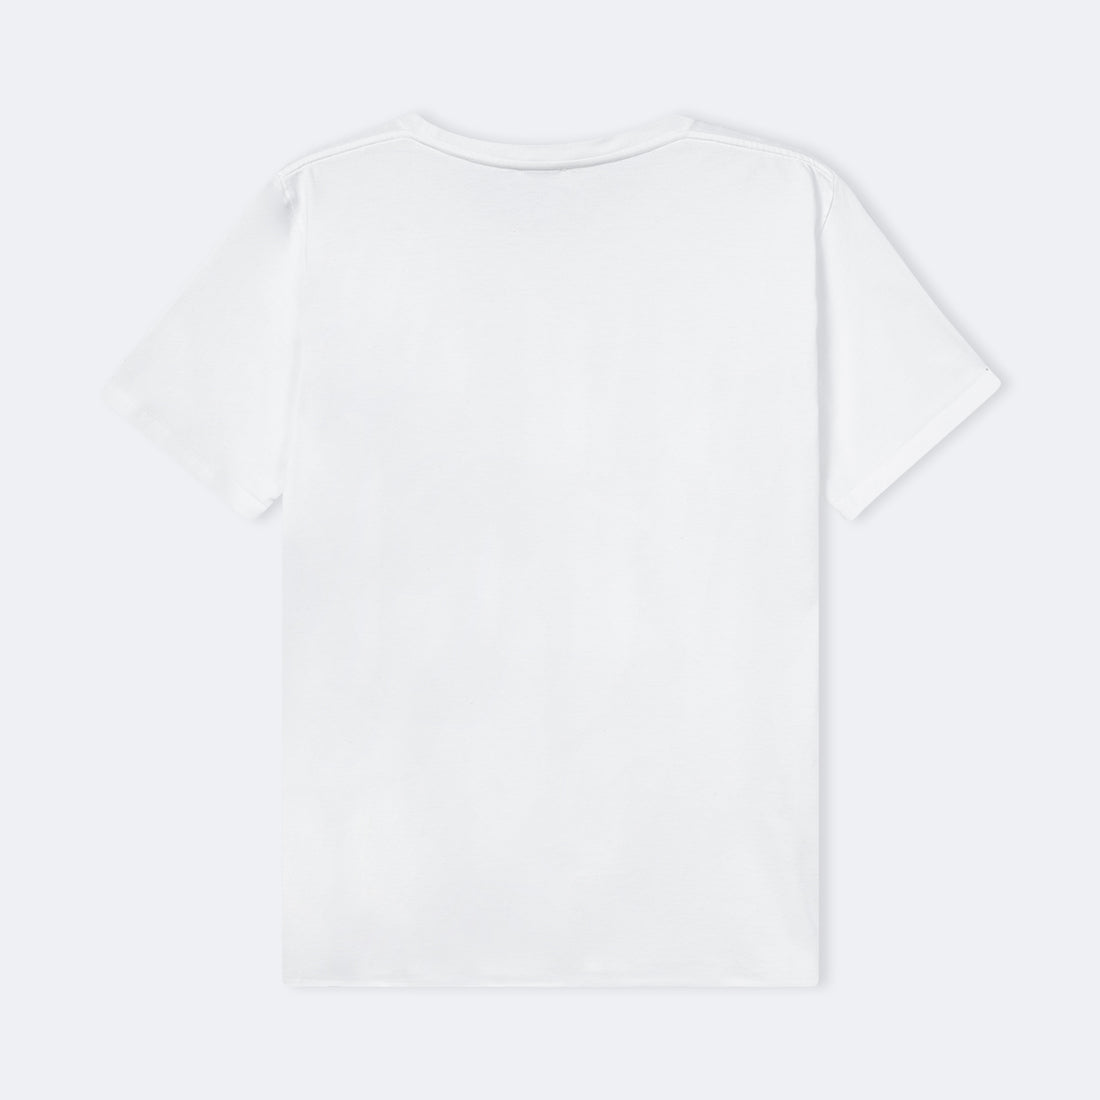 SAINT LAURENT | Boyfriend T-Shirt mit kurzen Ärmeln